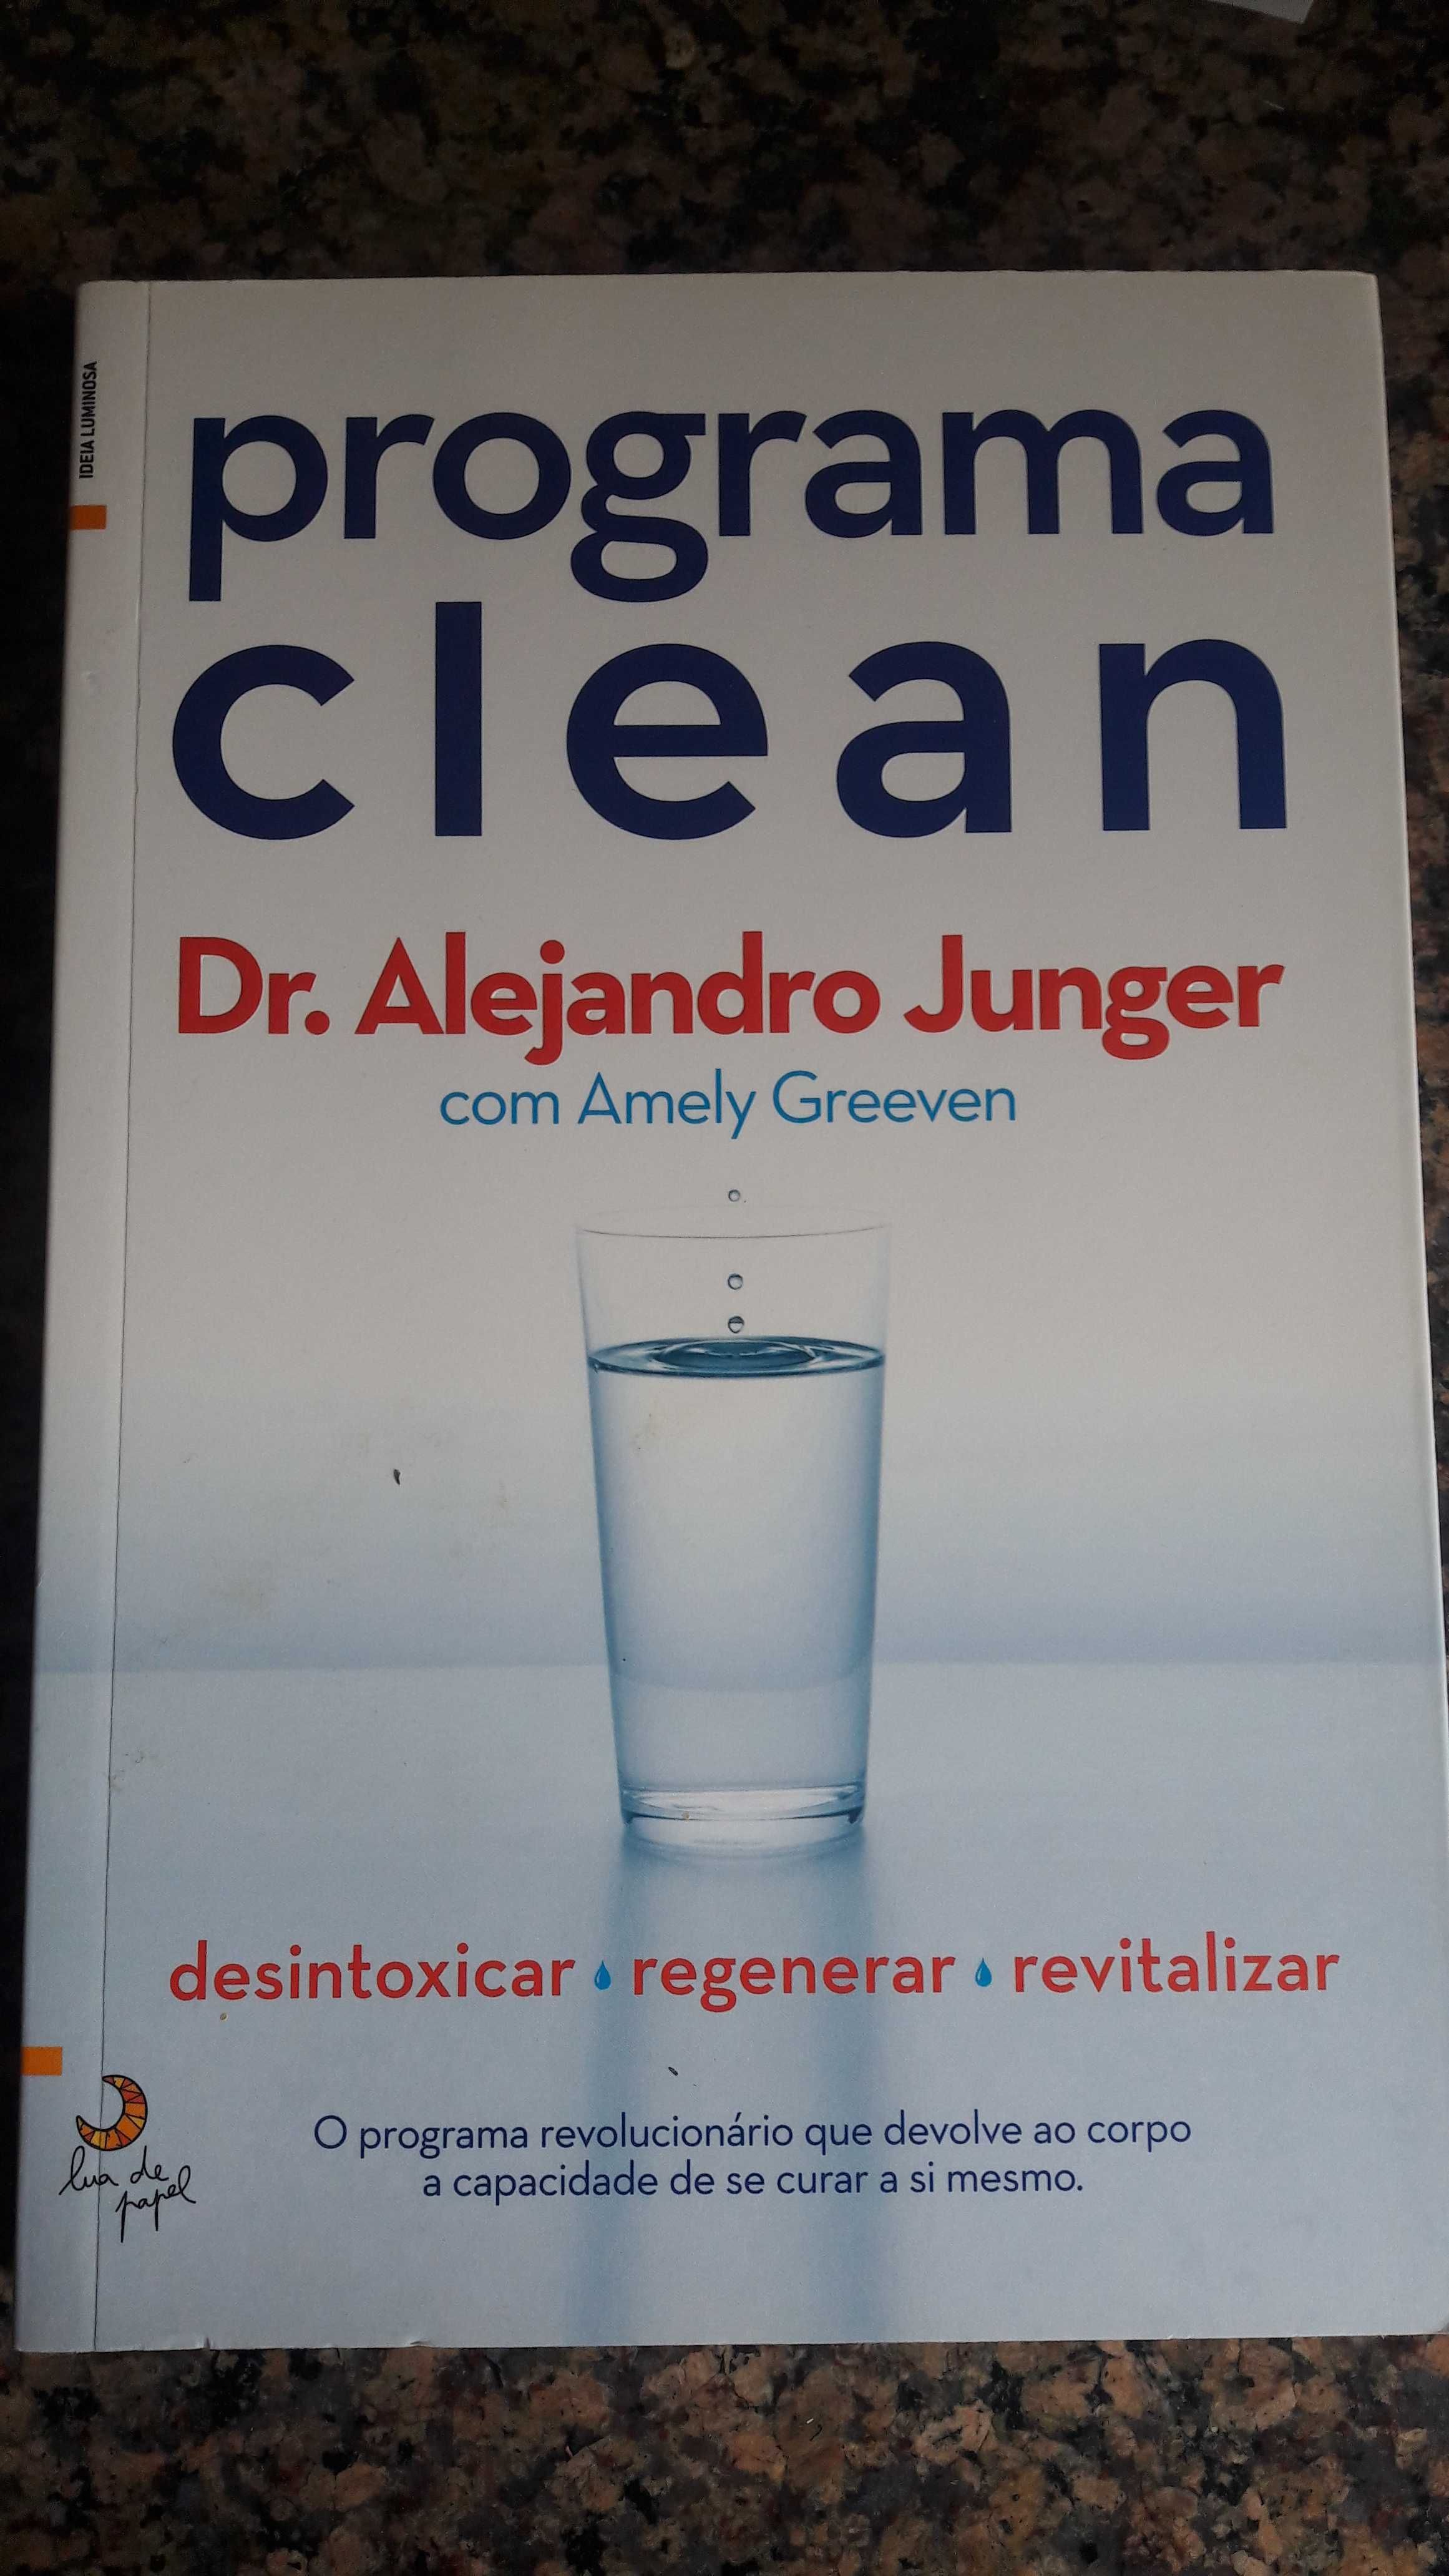 Vendo livro, estado novo, Programa Clean de Dr. Alejandro Junger